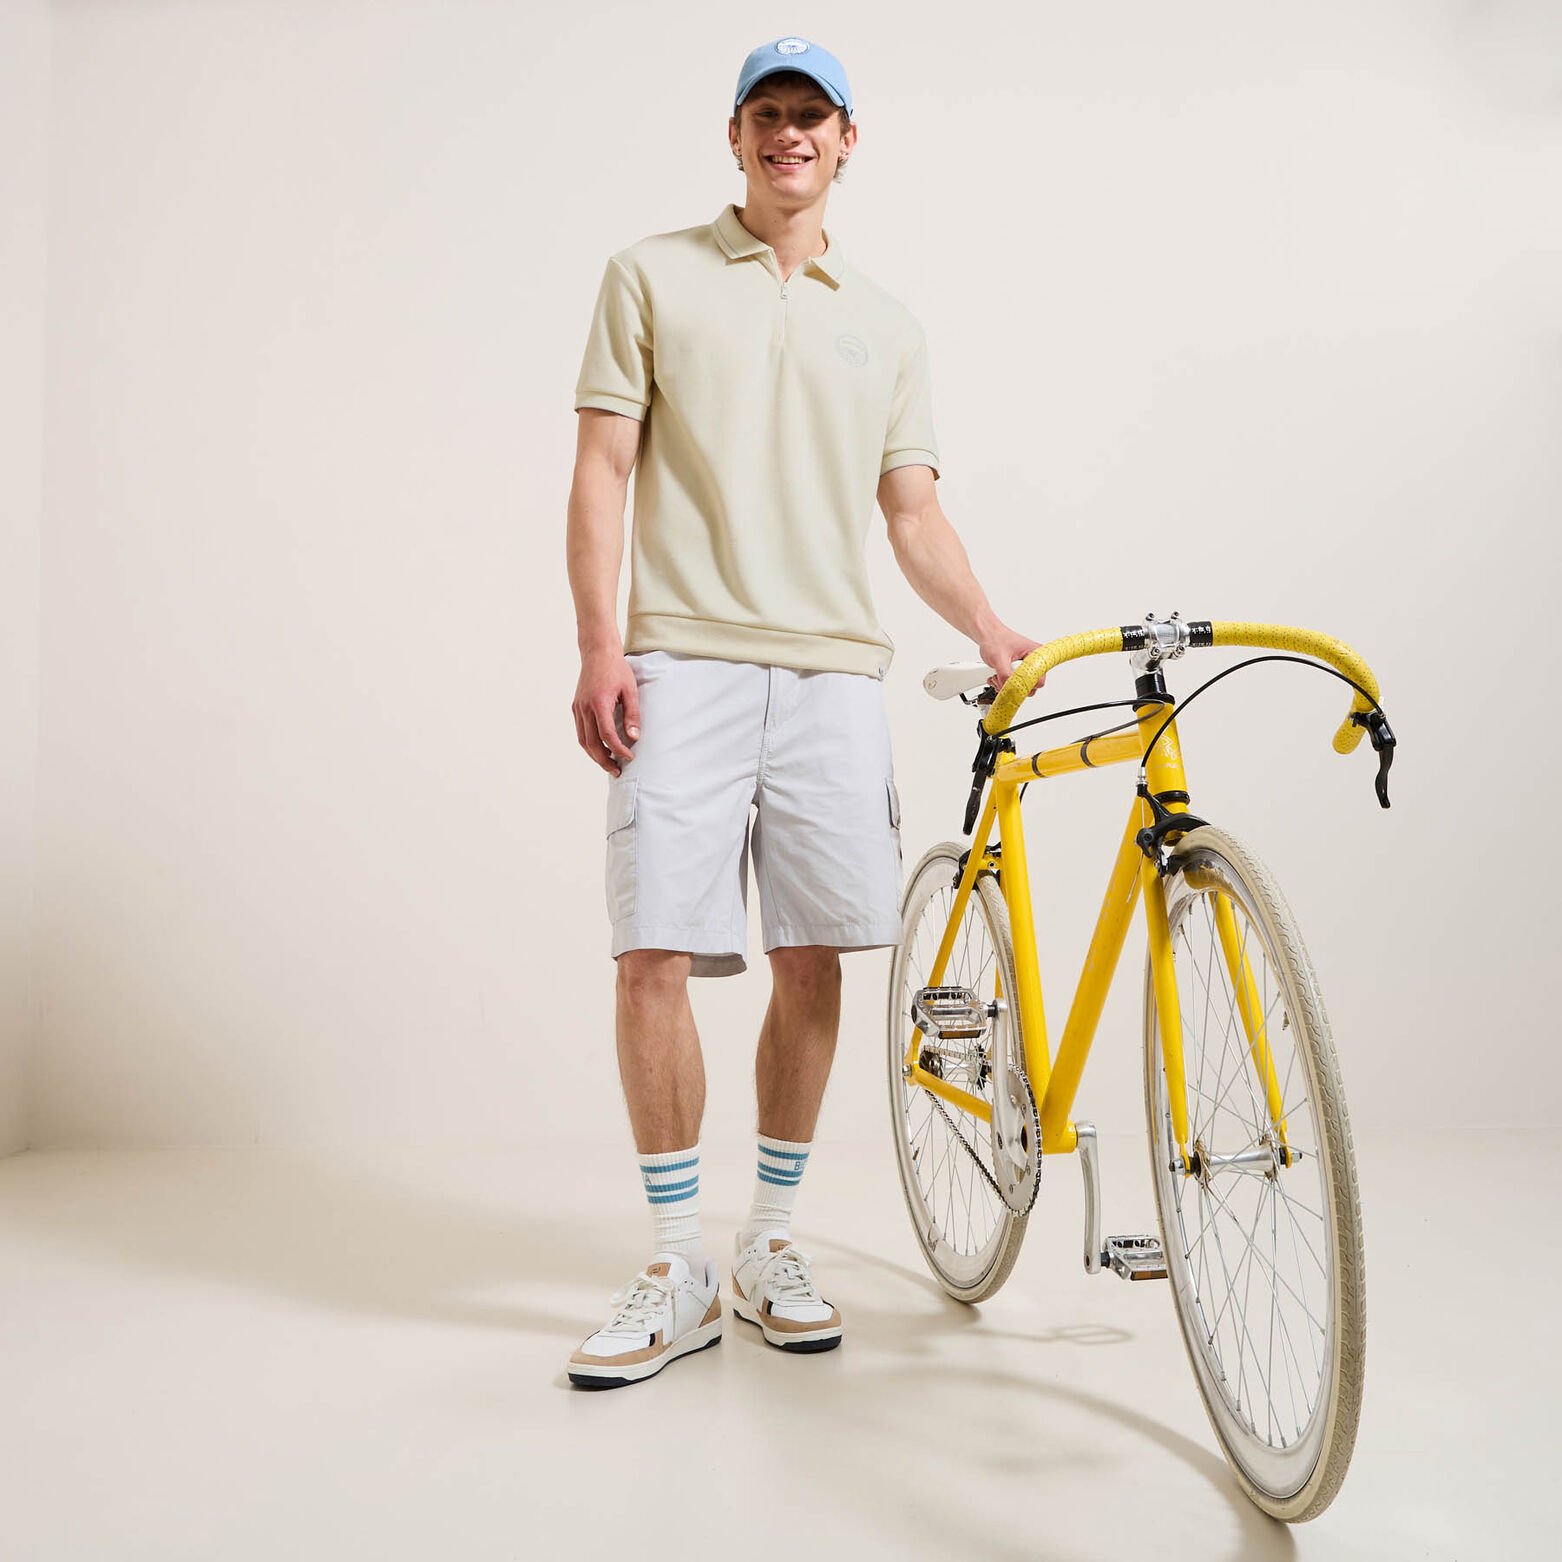 Polo met korte mouwen, Tour de France-licentie